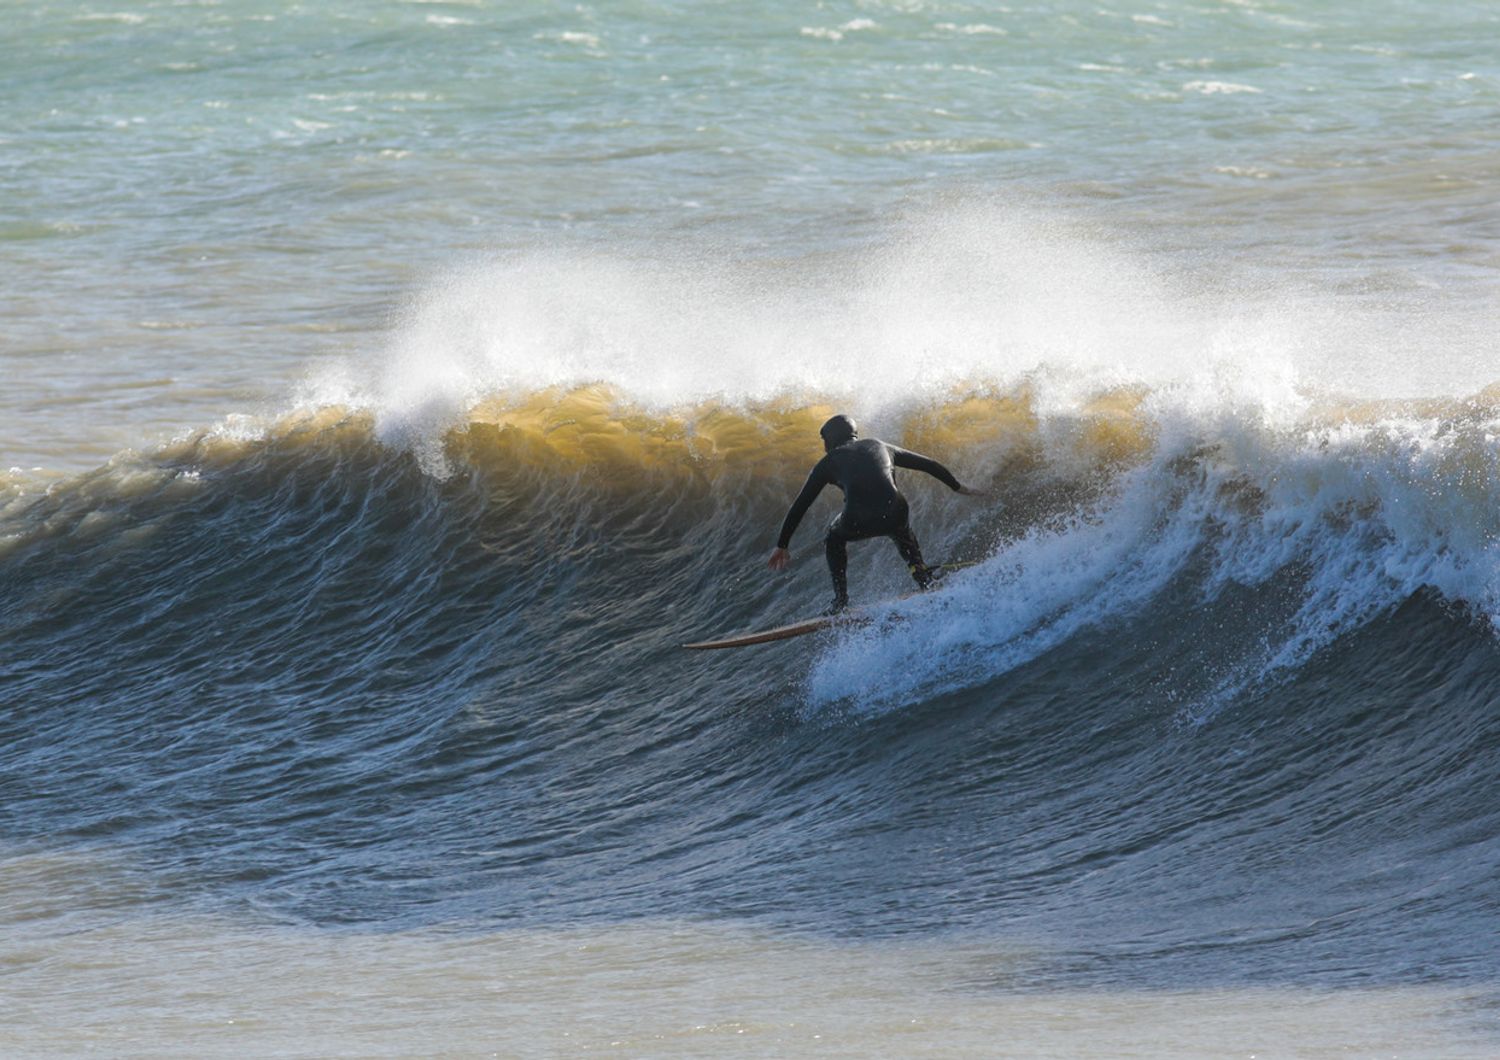 Un surfista a Santa Marinella sul litorale laziale in inverno (immagine di repertorio)